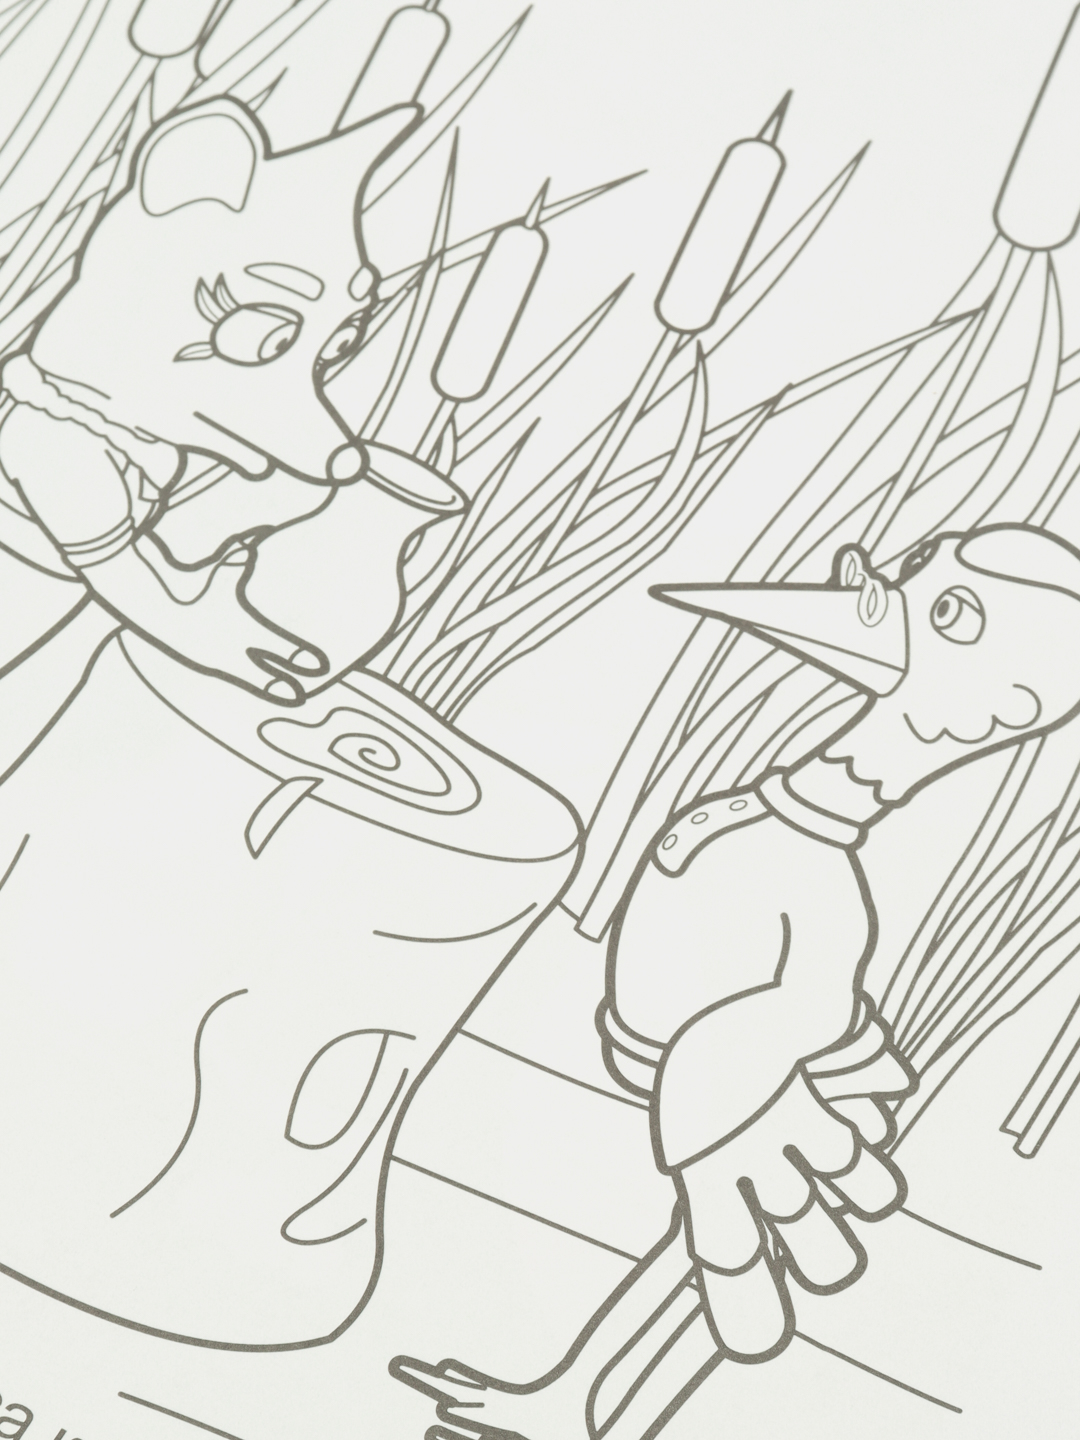 Раскраска по сказке «Лиса и журавль»